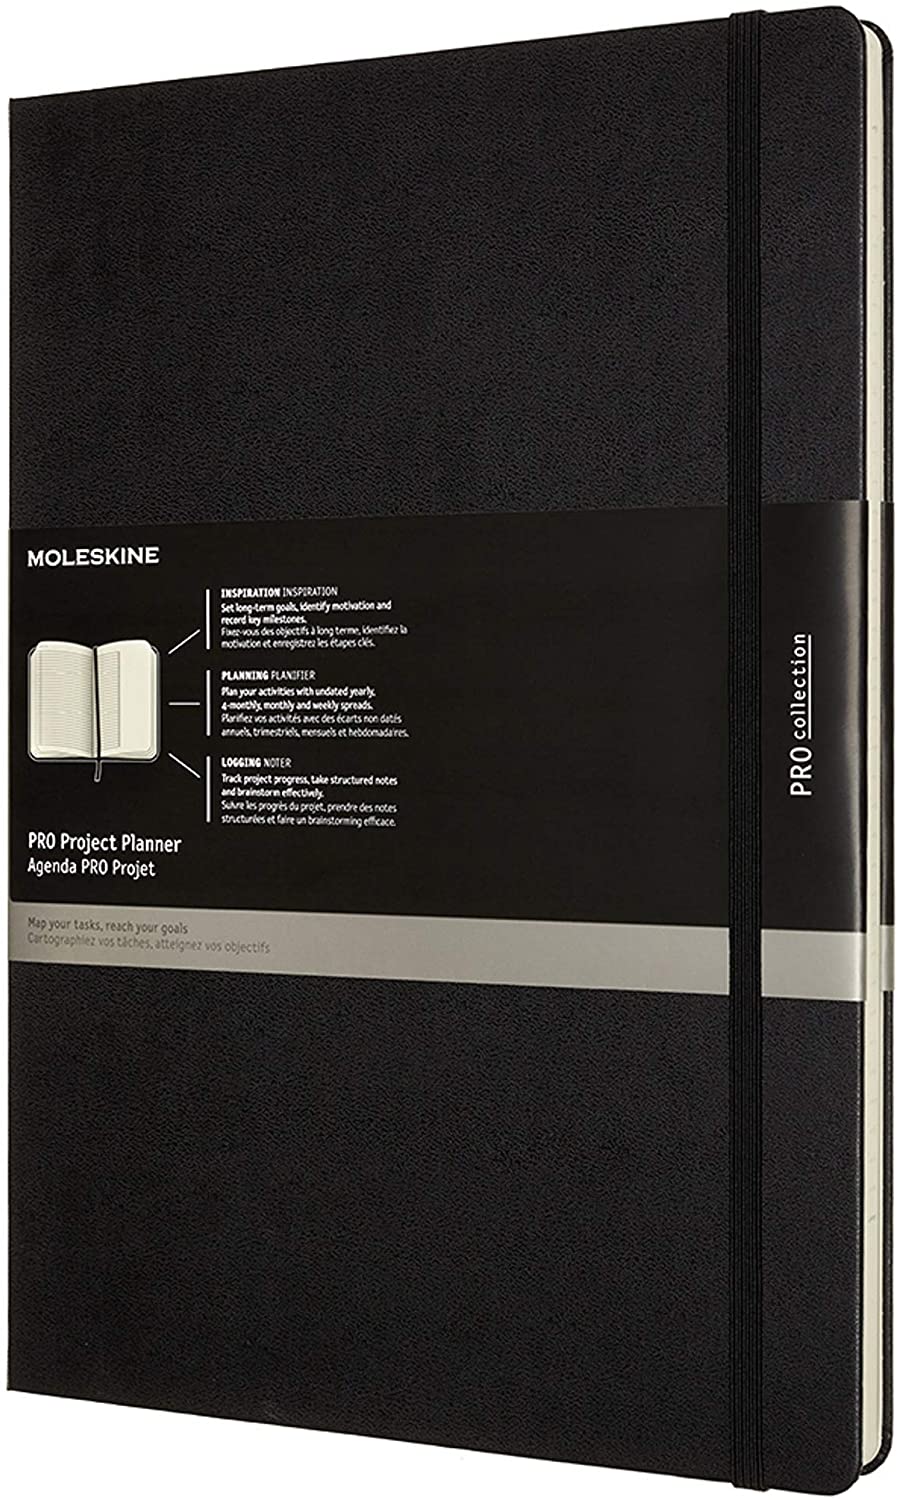 Agenda - Moleskine - Pro Project Planner - Black, A4, Hard Cover